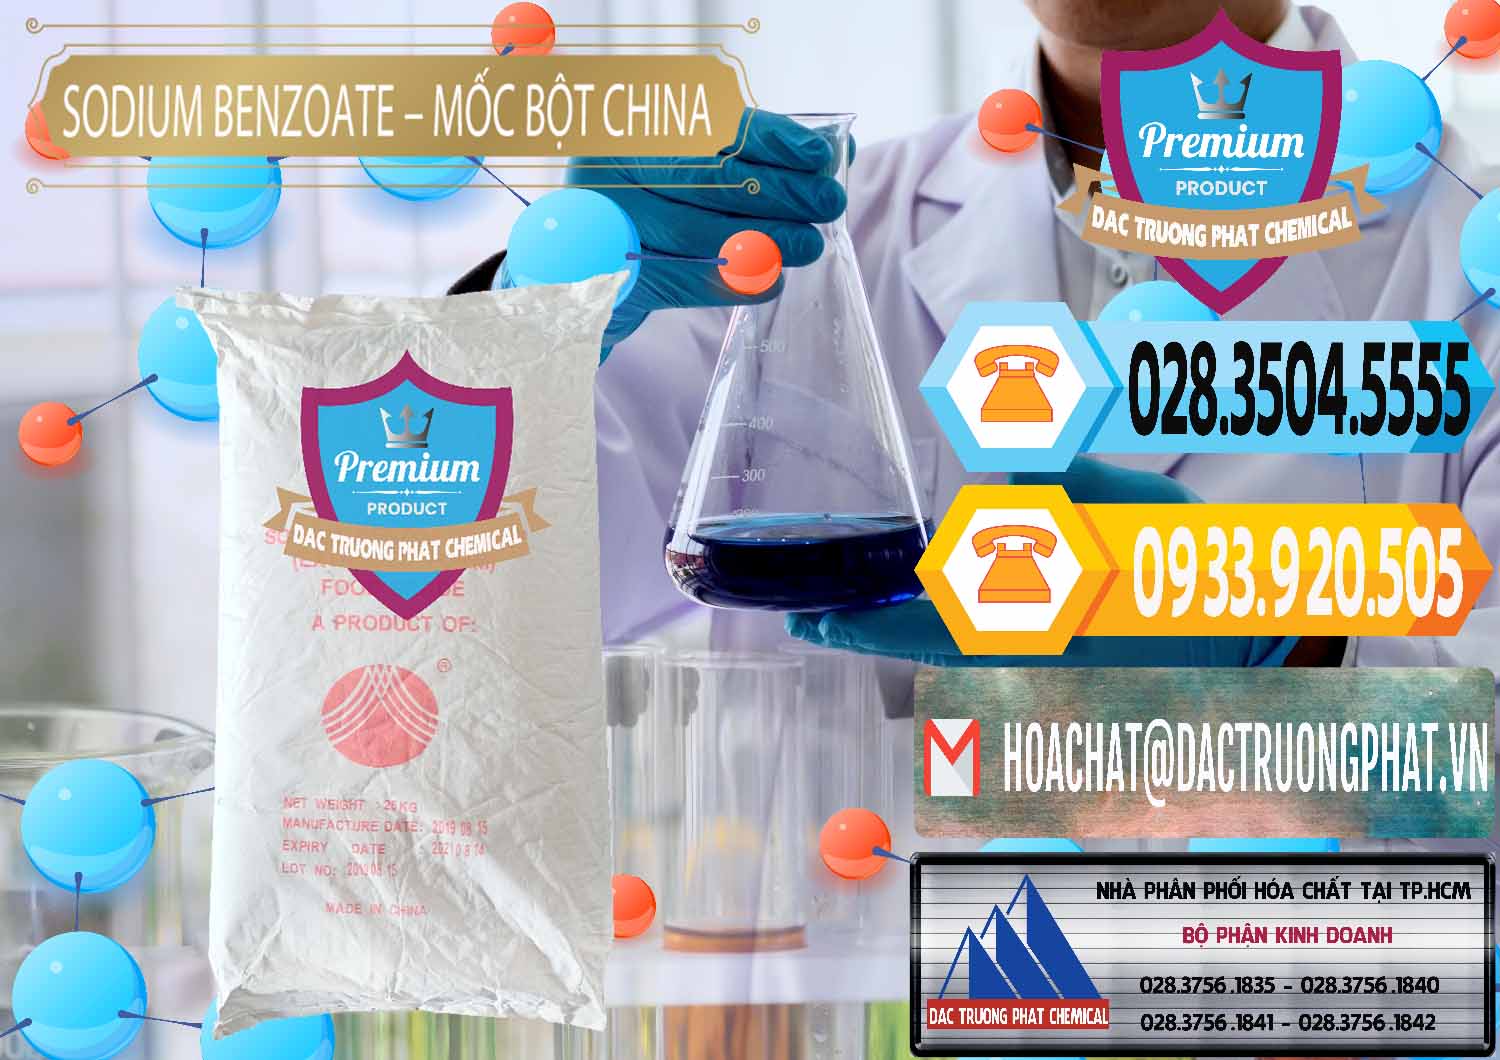 Nơi phân phối - bán Sodium Benzoate - Mốc Bột Chữ Cam Food Grade Trung Quốc China - 0135 - Đơn vị bán - cung cấp hóa chất tại TP.HCM - hoachattayrua.net